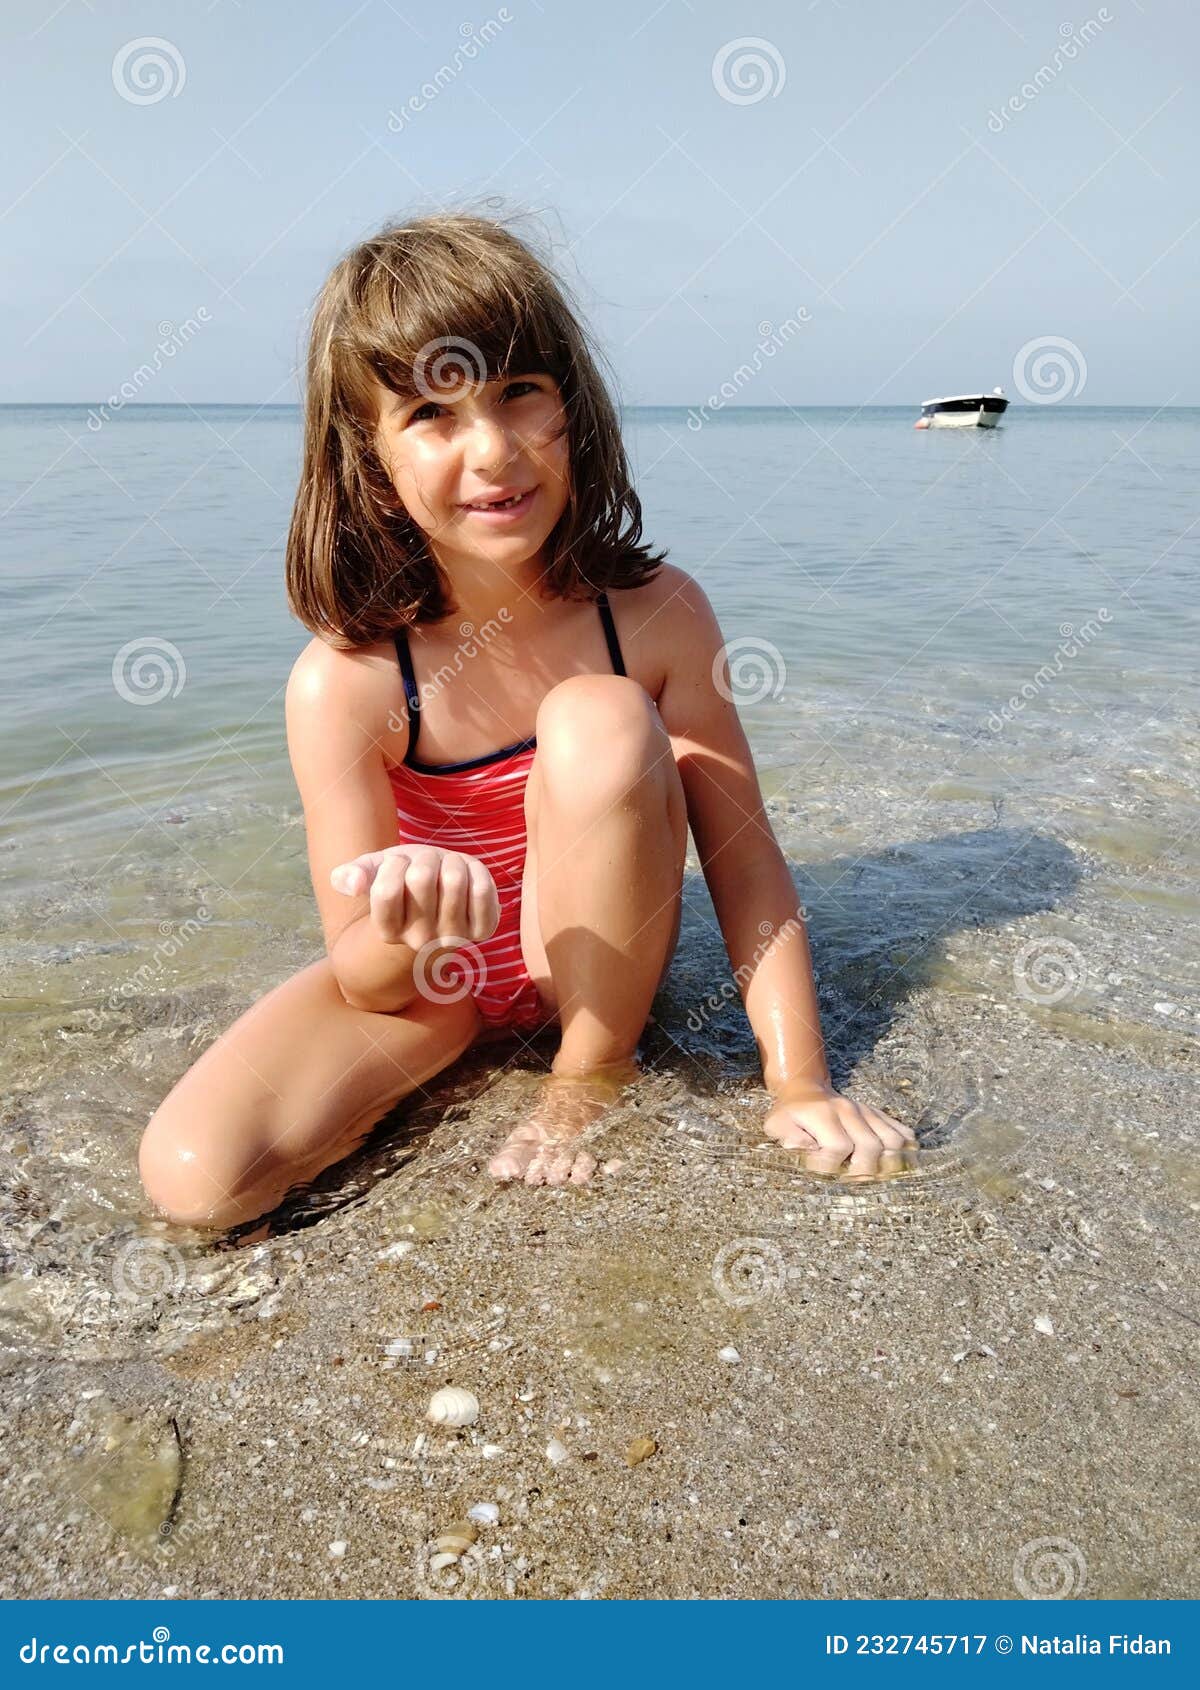 Niña nadadora de niños en un traje de baño rojo en el fondo: fotografía de  stock © lacheev #133774890